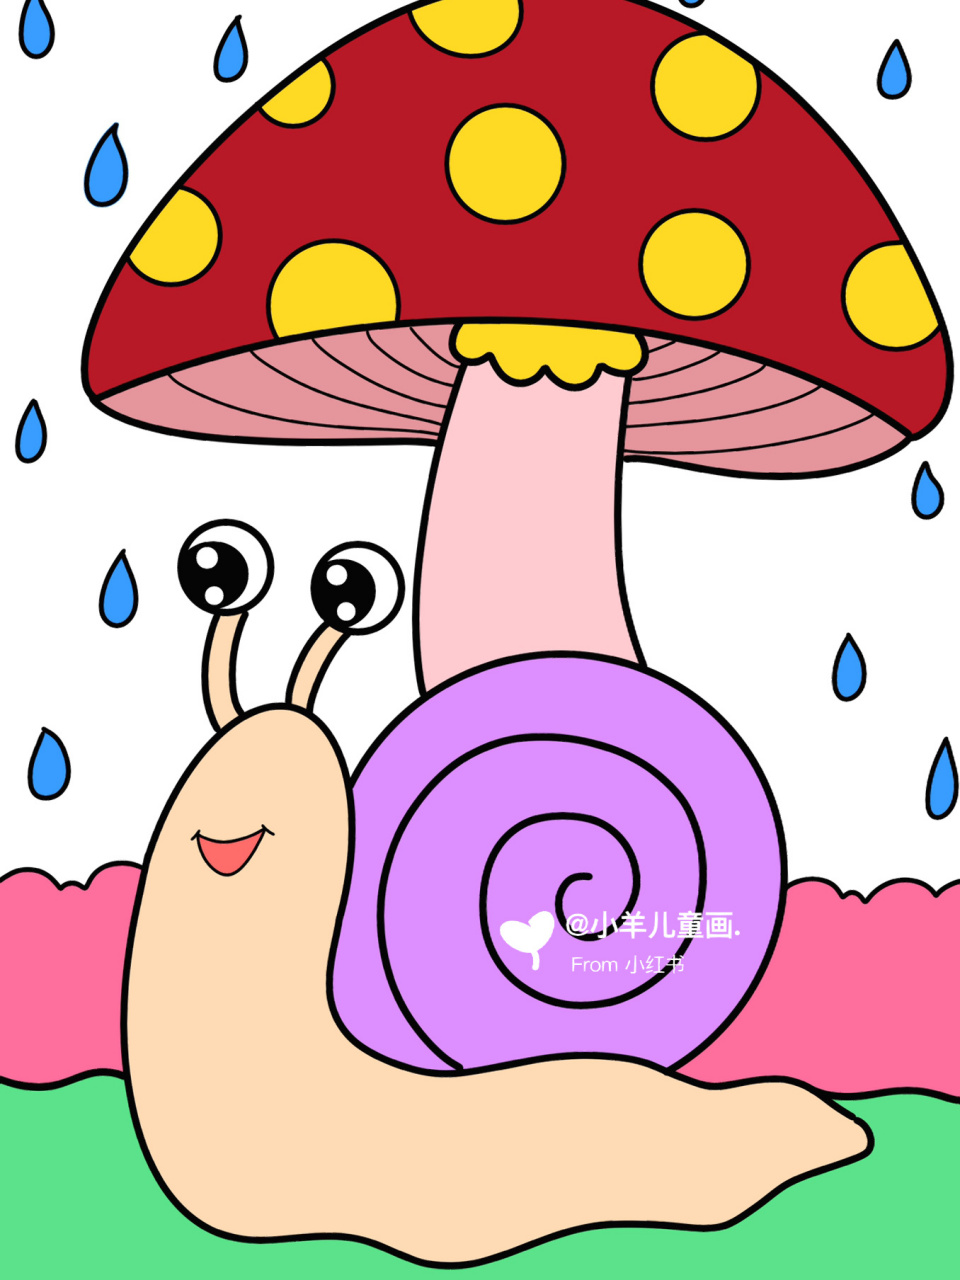 躲雨的小蜗牛儿童创意画 蜗牛简笔画 